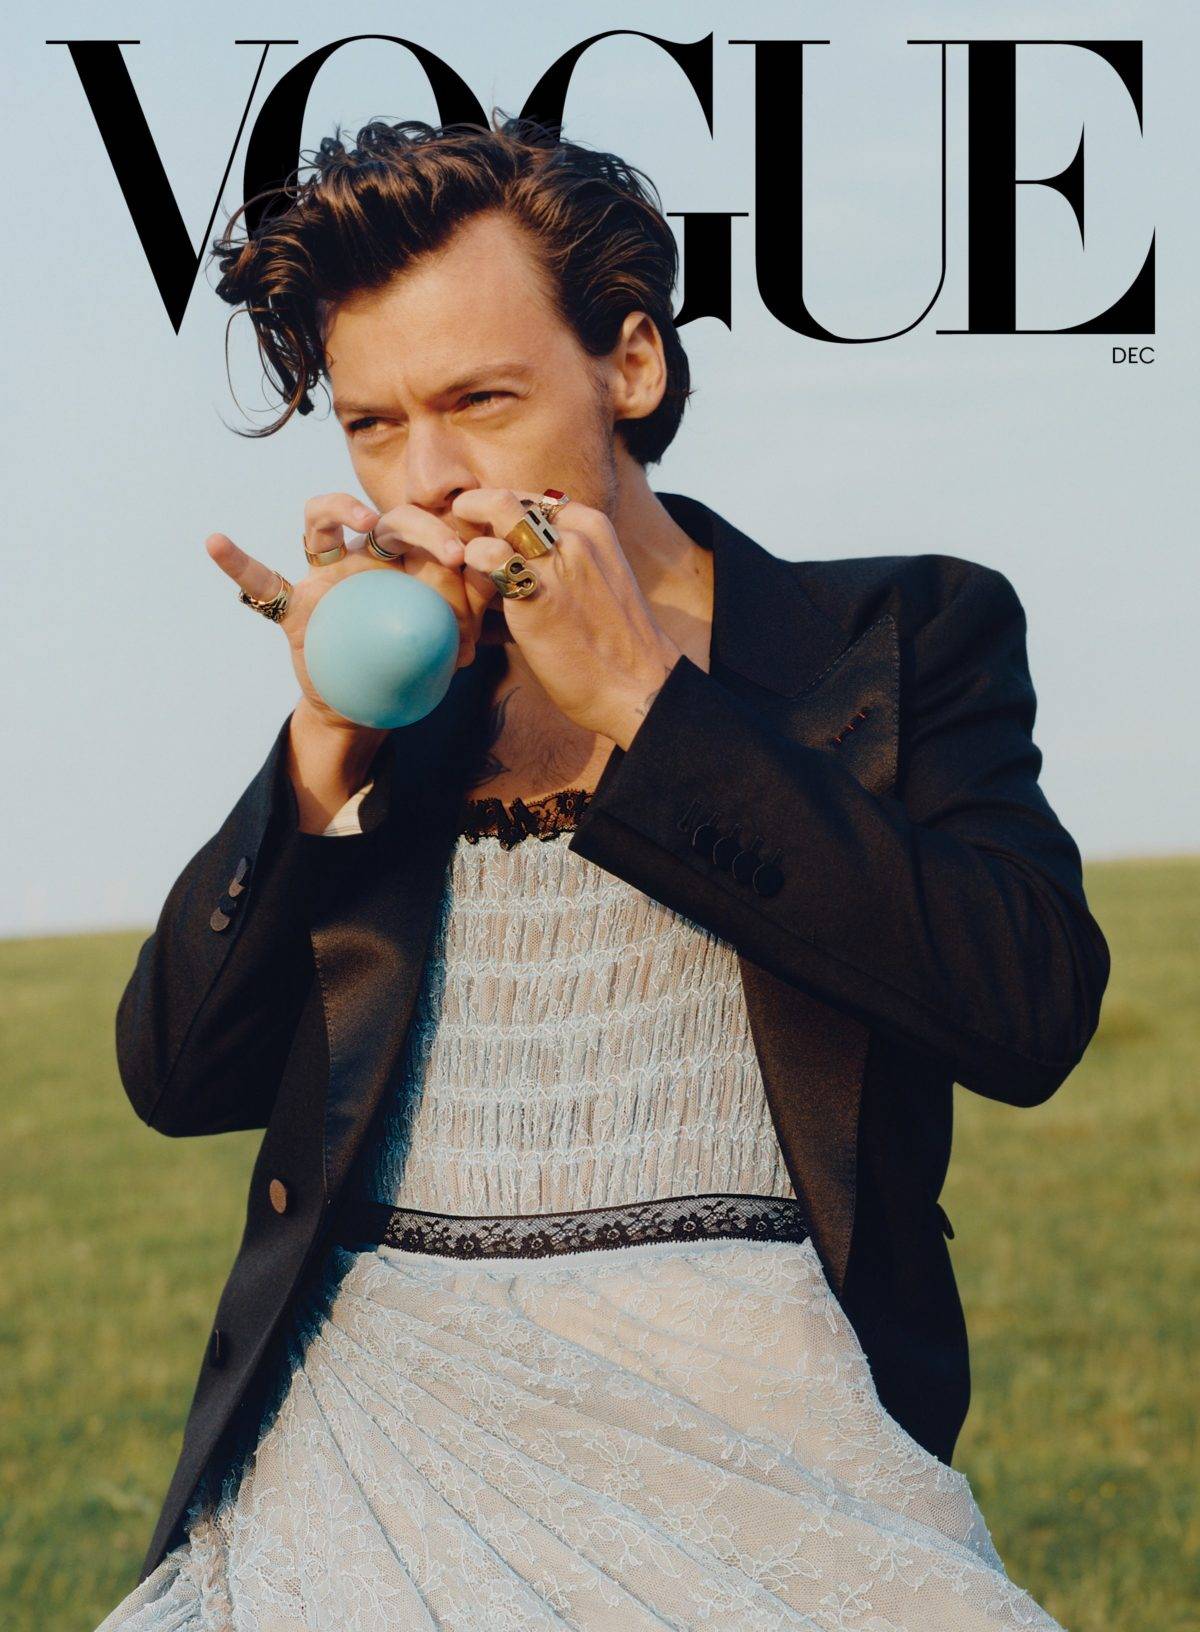 Harry Styles es criticado tras su portada en Vogue por ser demasiado femenino